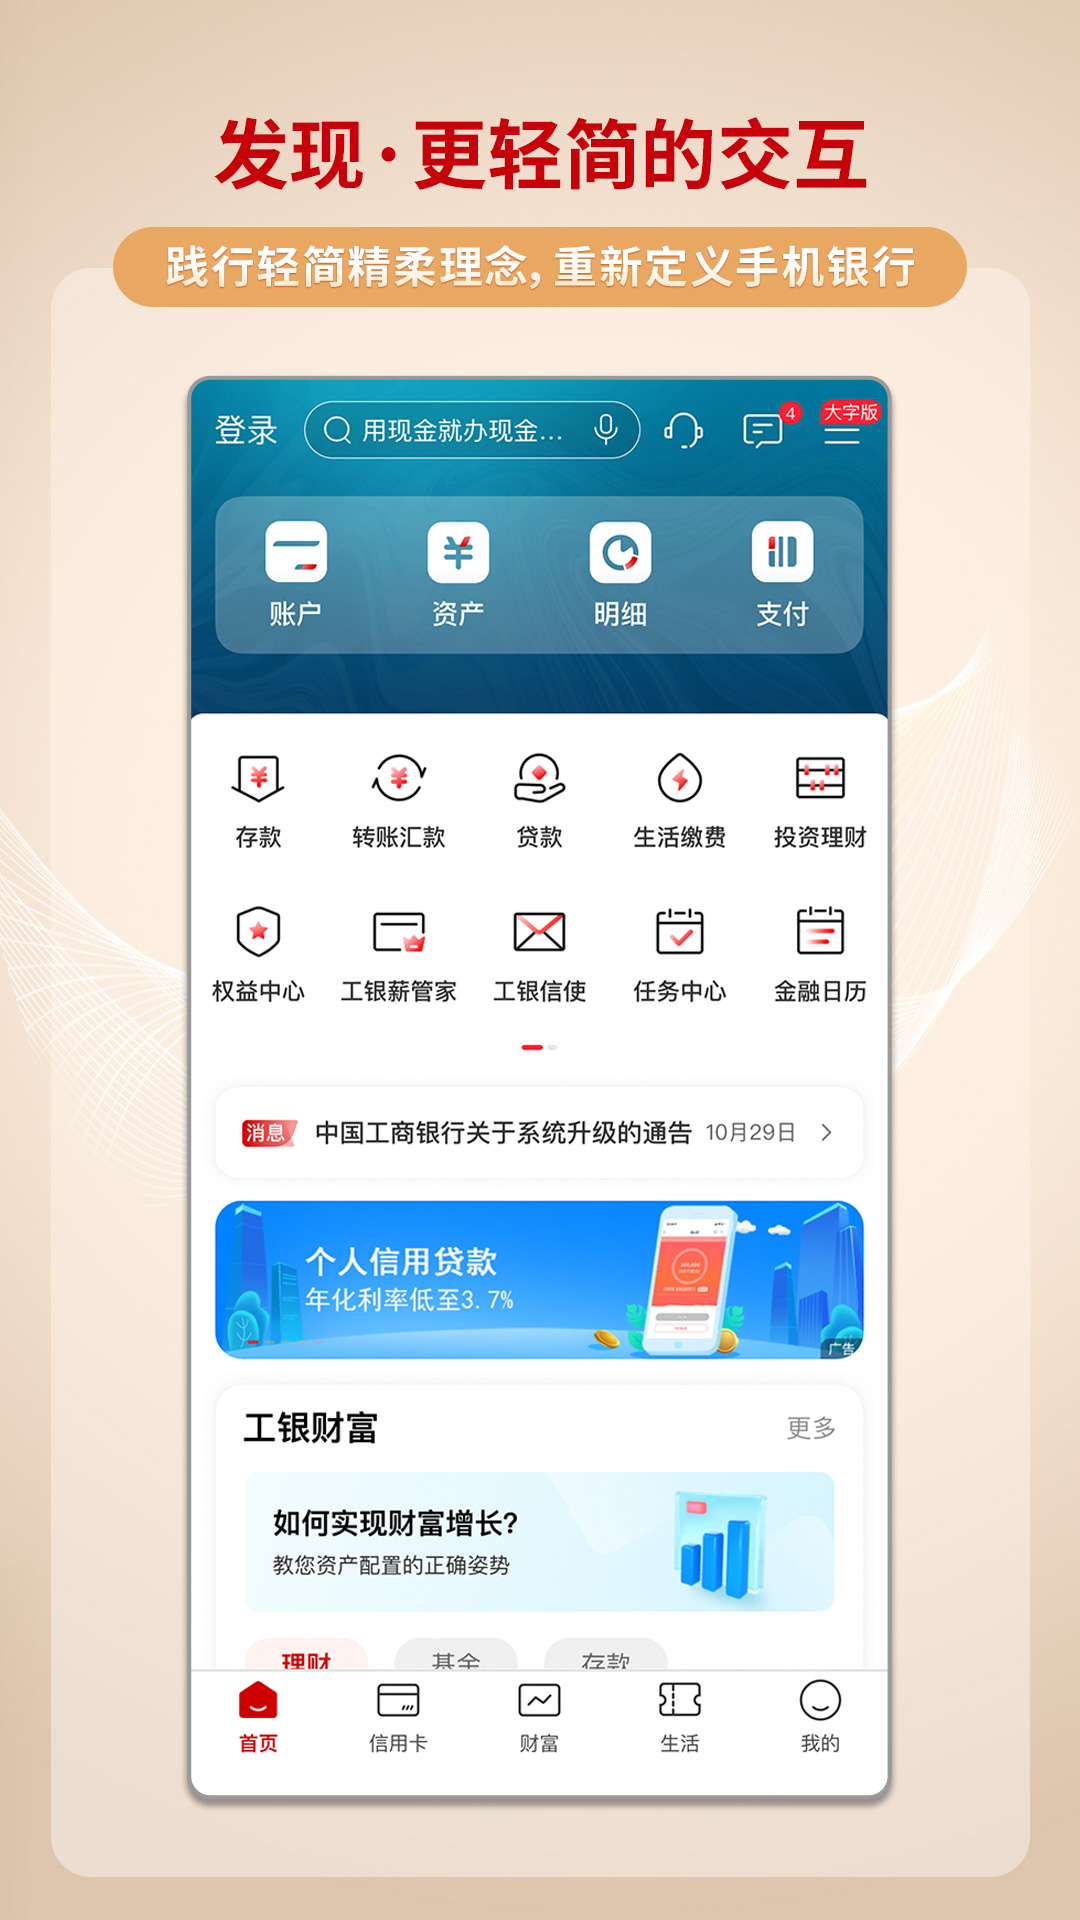 中国工商银行苹果版v8.1.0.9.0 官方版